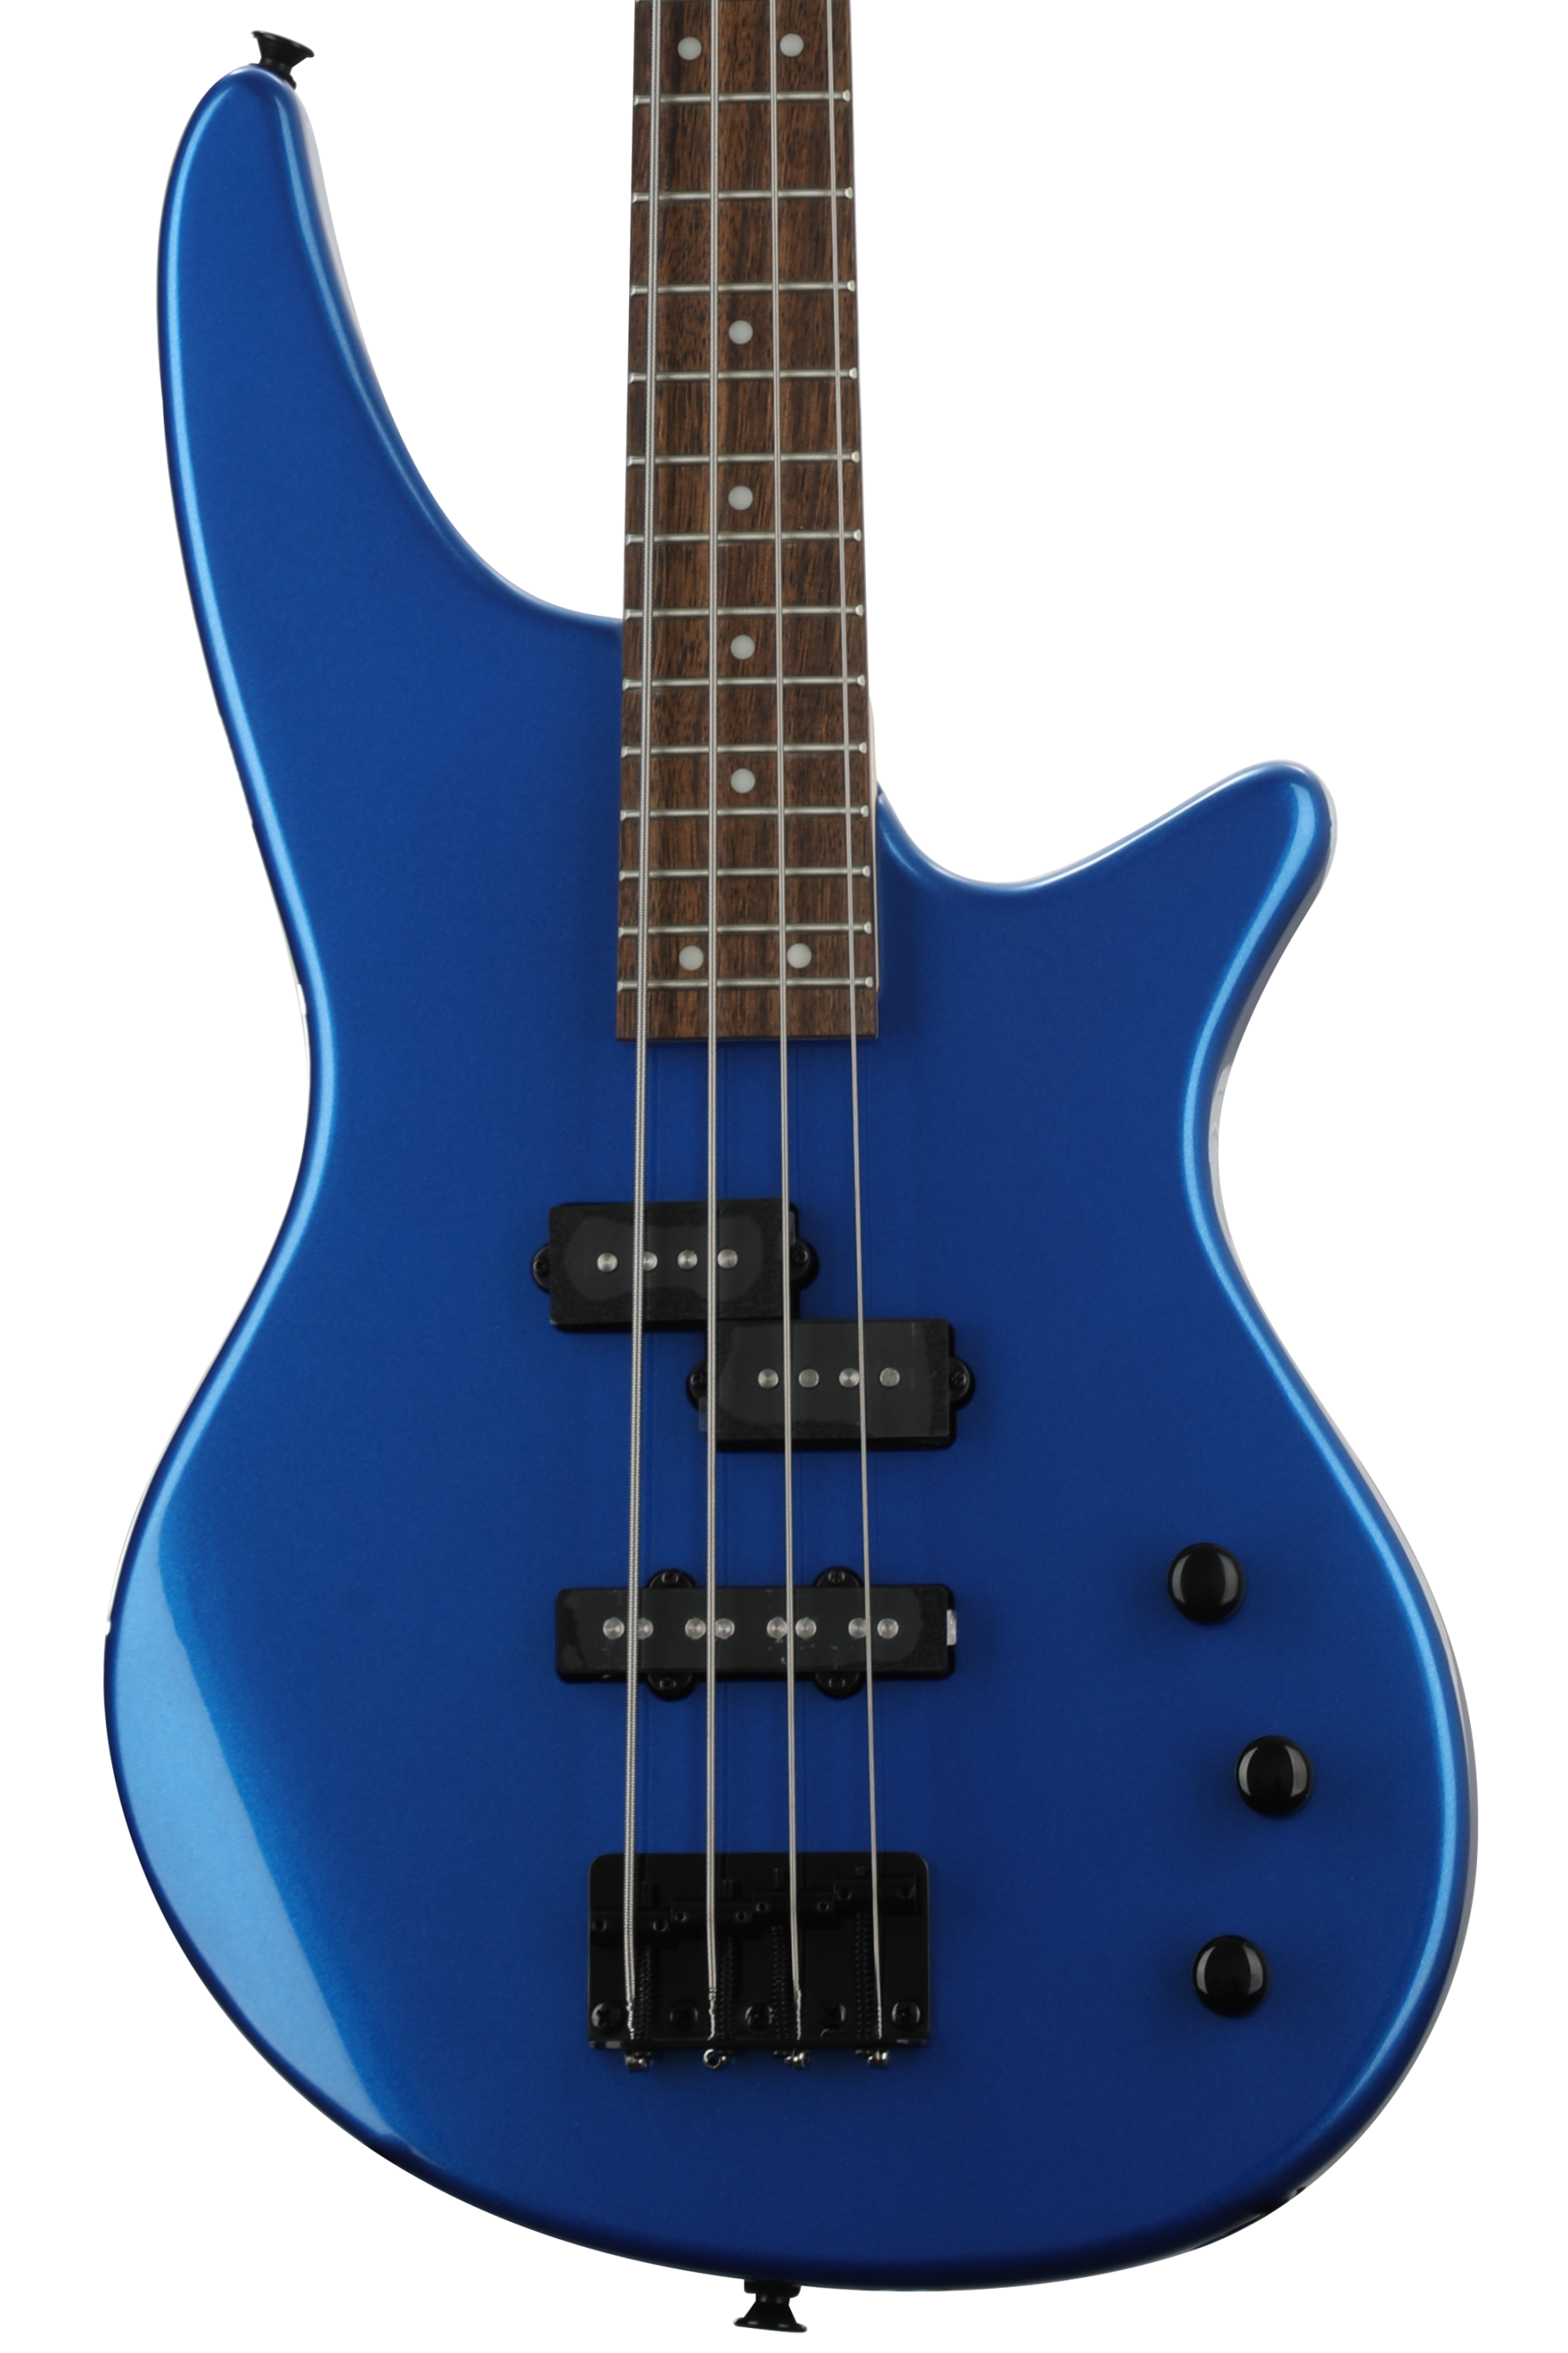 Bundled Item: Jackson Spectra JS2 Bass Guitar - Metallic Blue